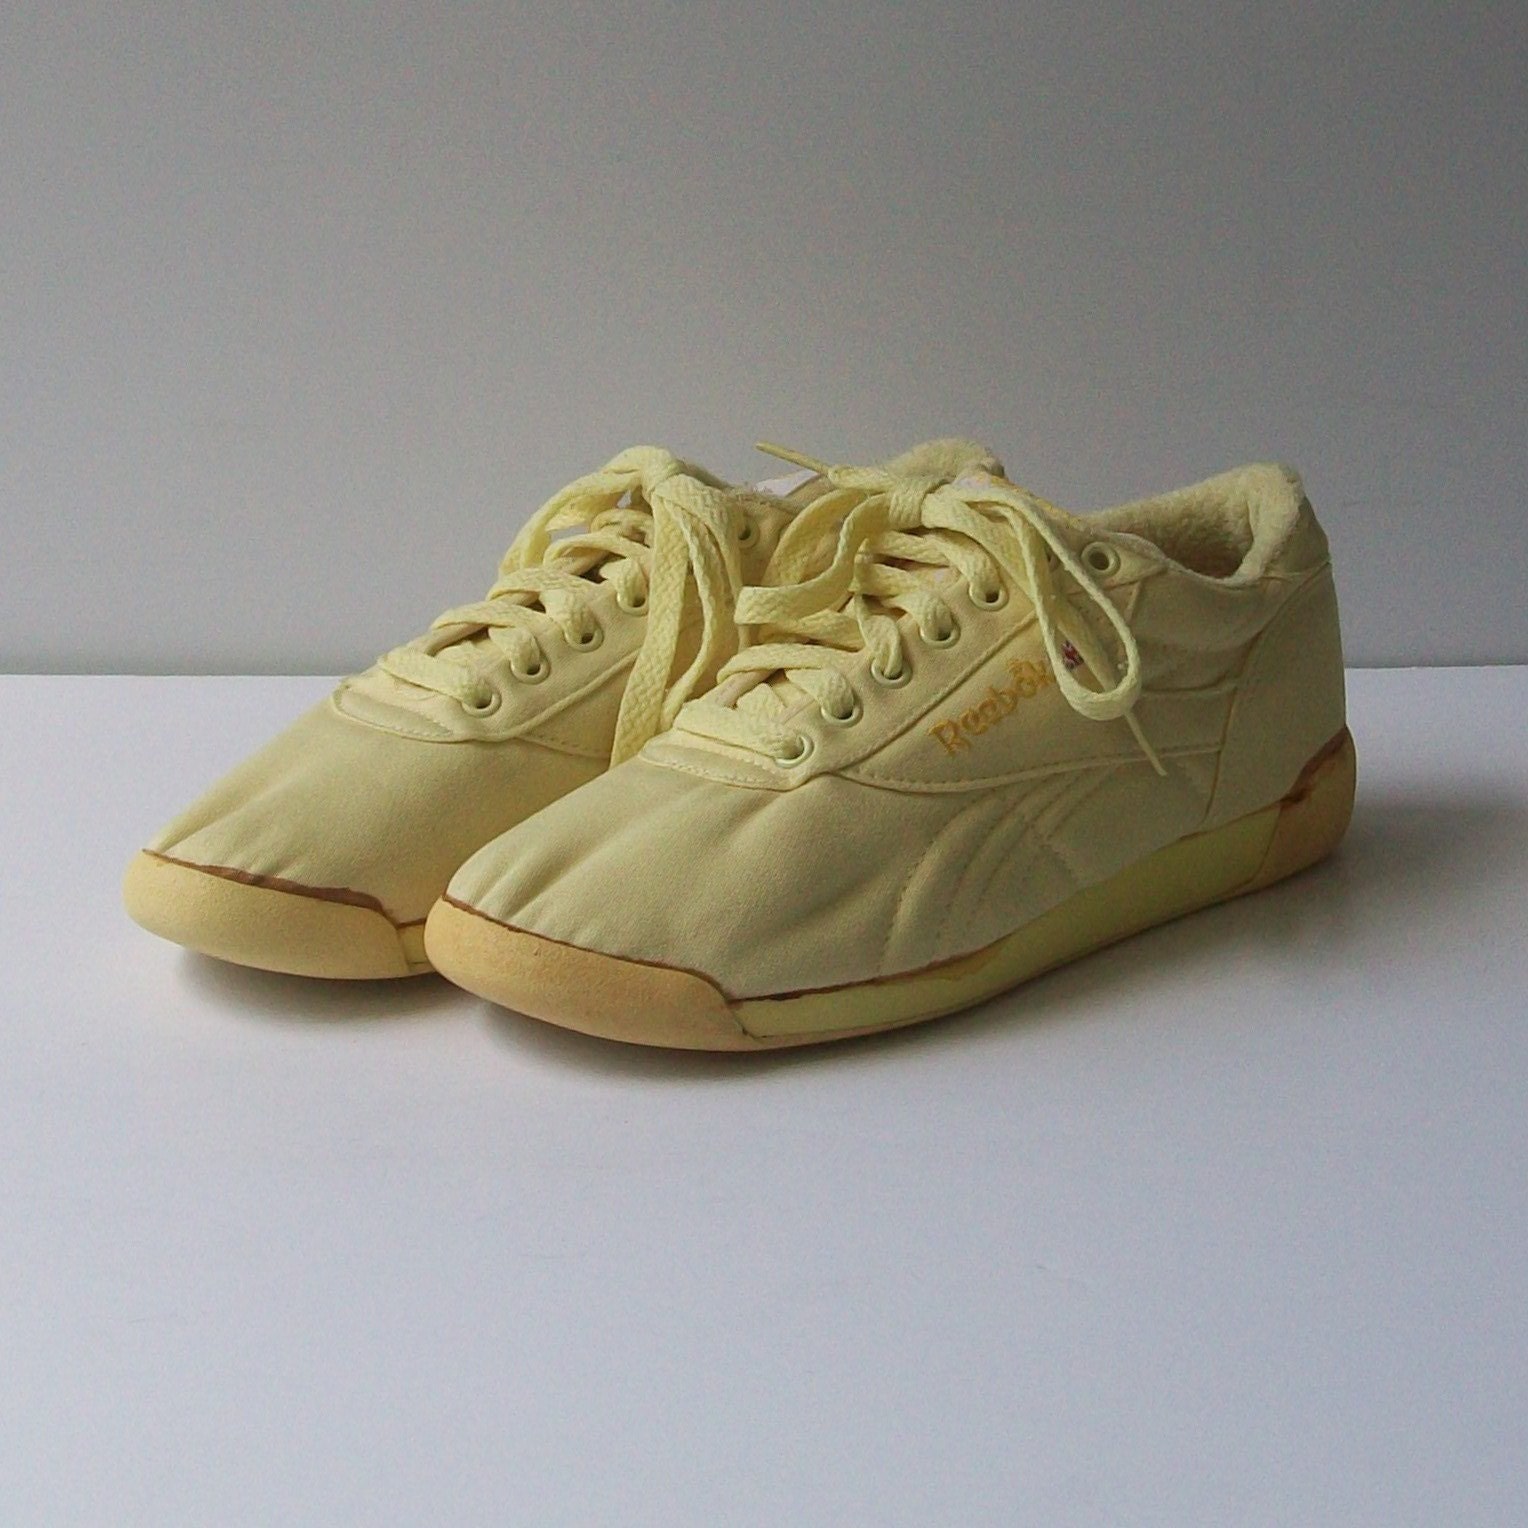 Vintage 80s LEMON Reebok Aerobic Tennis Shoes Size 7.5